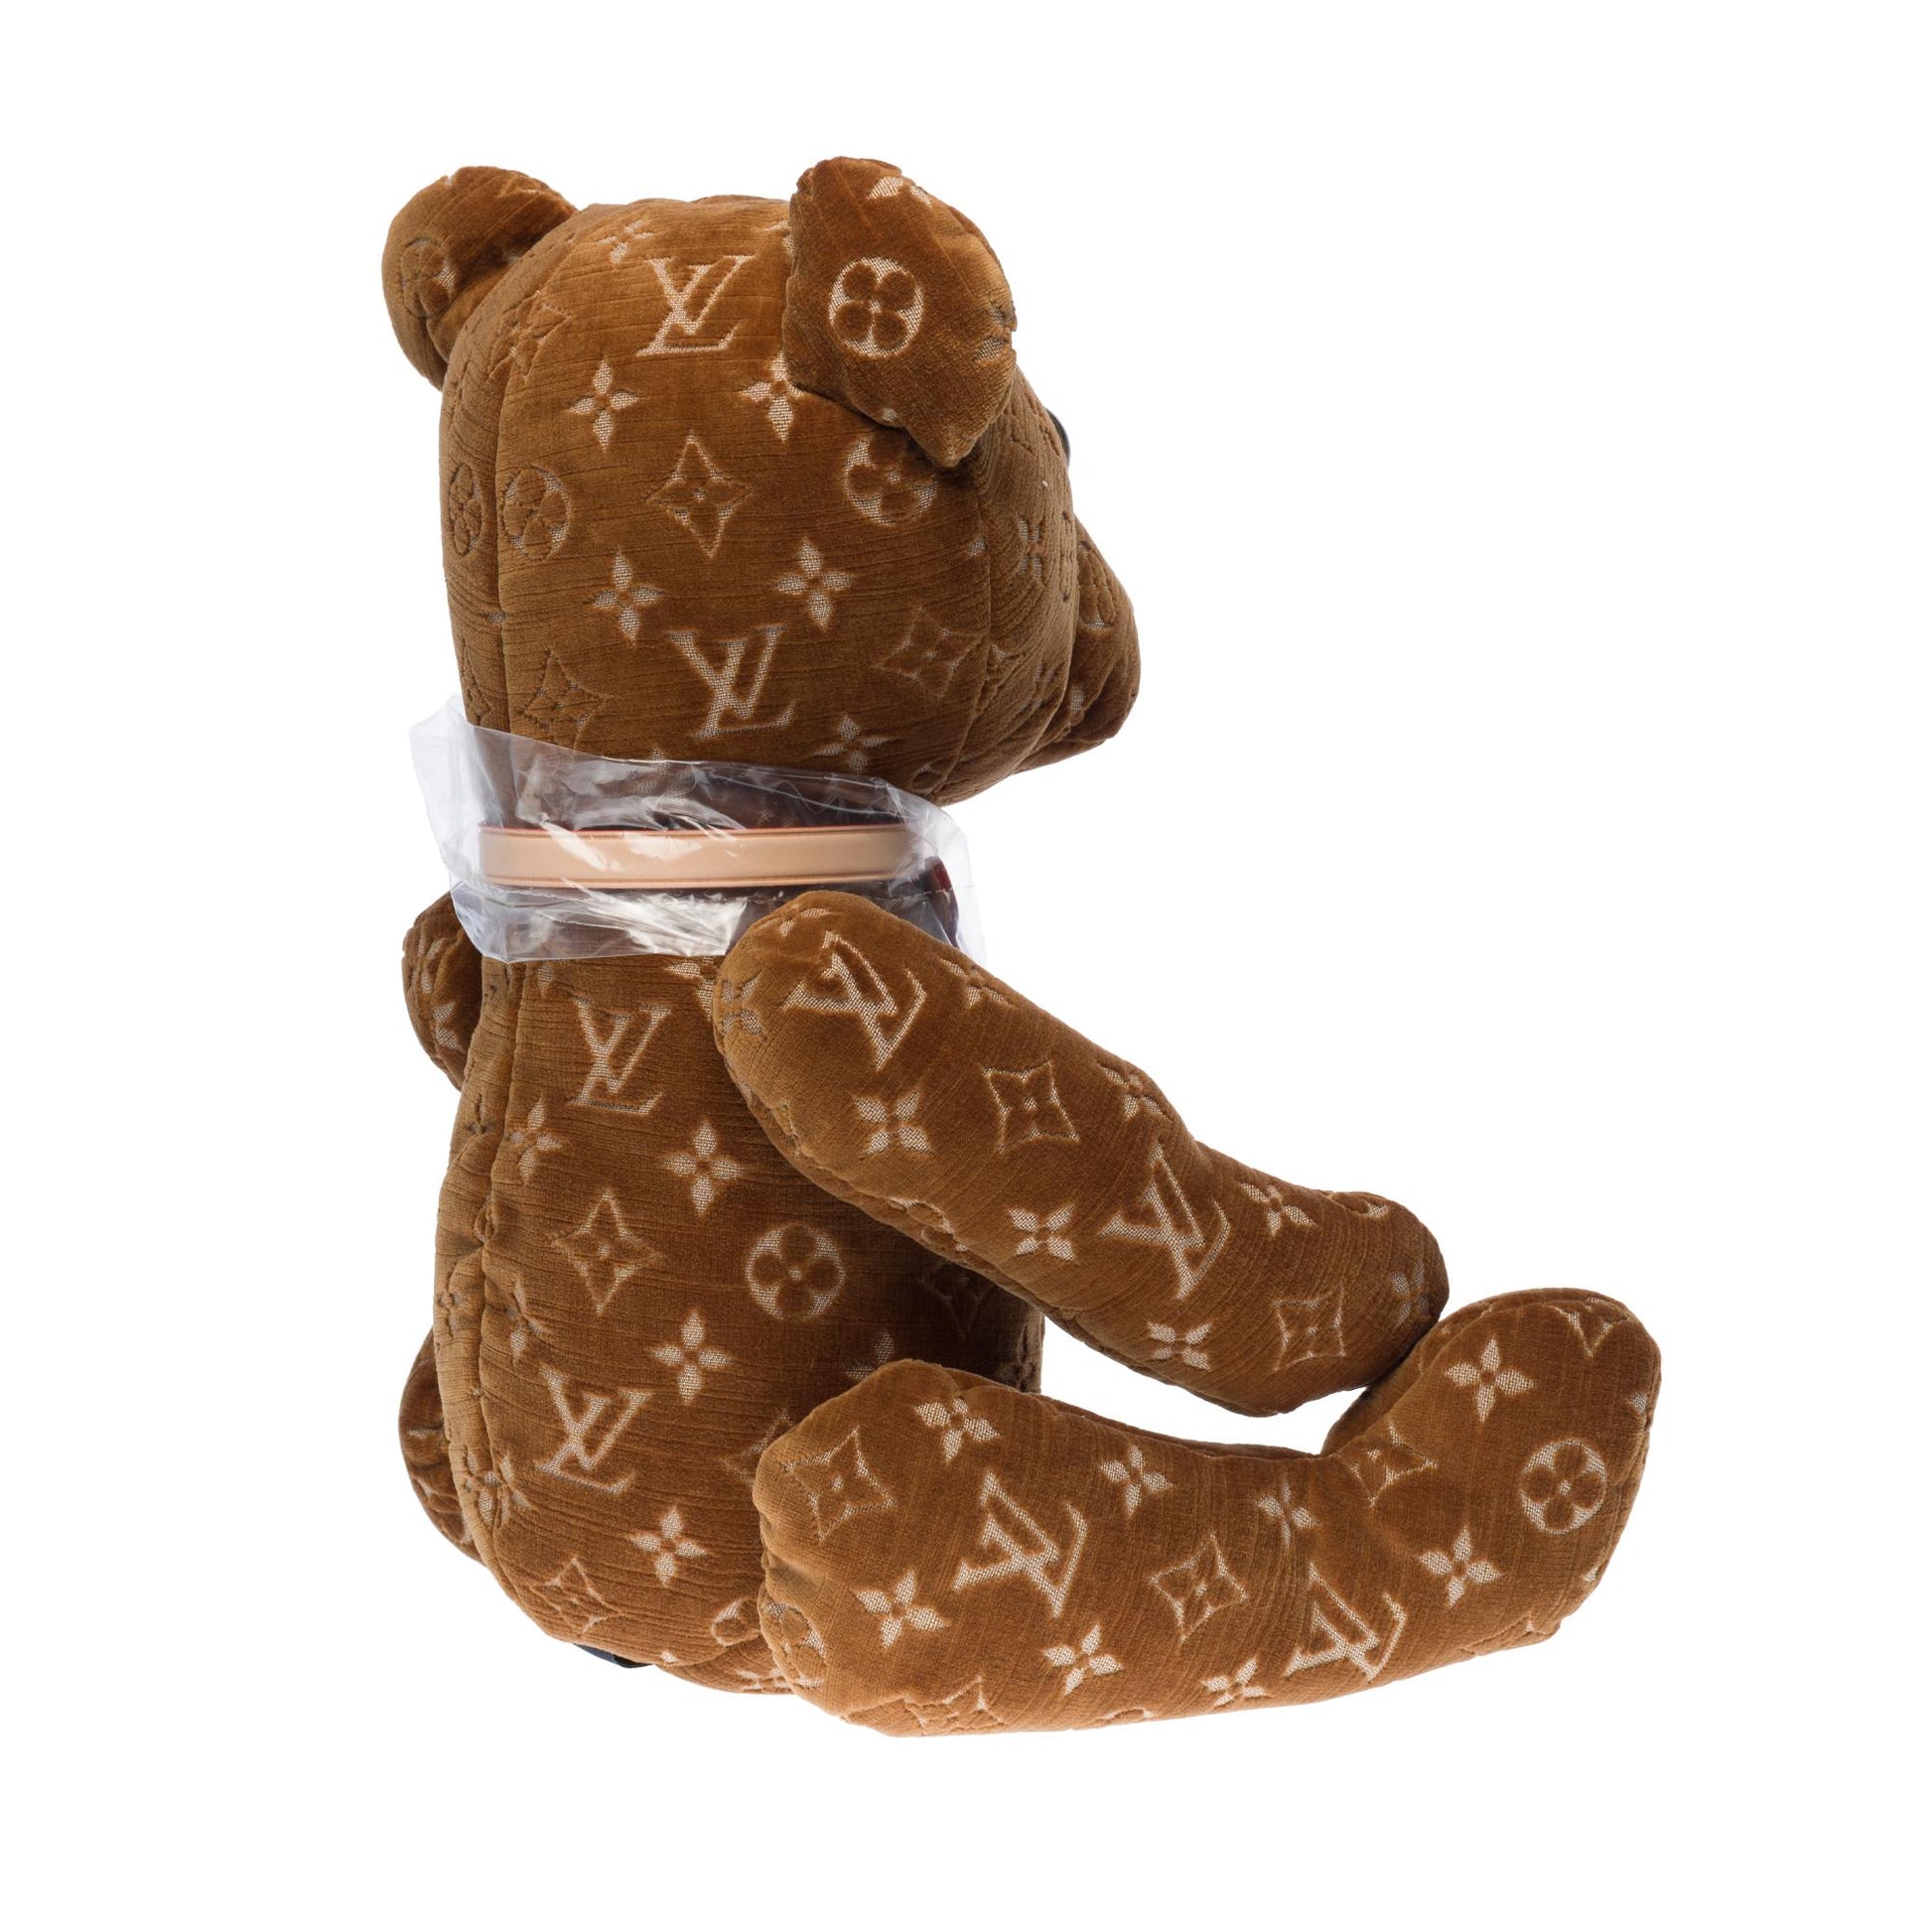 LOUIS VUITTON Brand New Collectible Teddy Bear DouDou